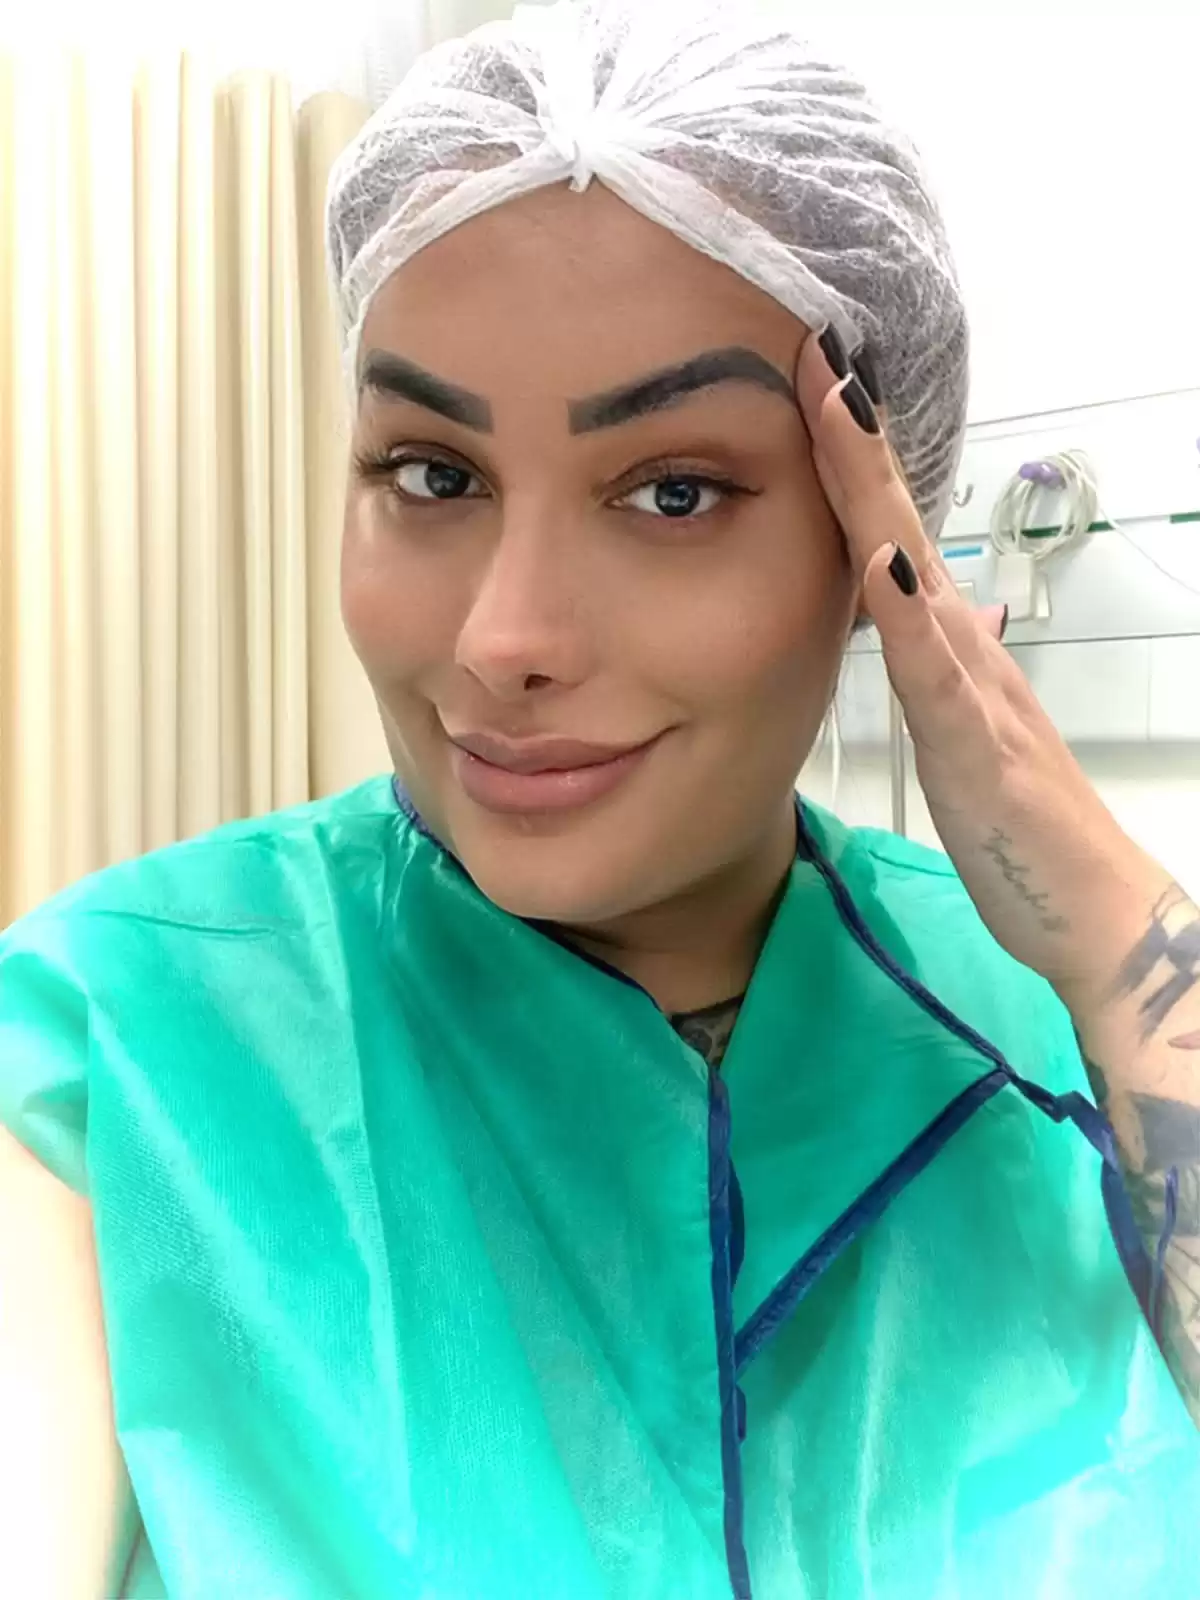 MC Trans retorna a Santa Catarina para nova cirurgia